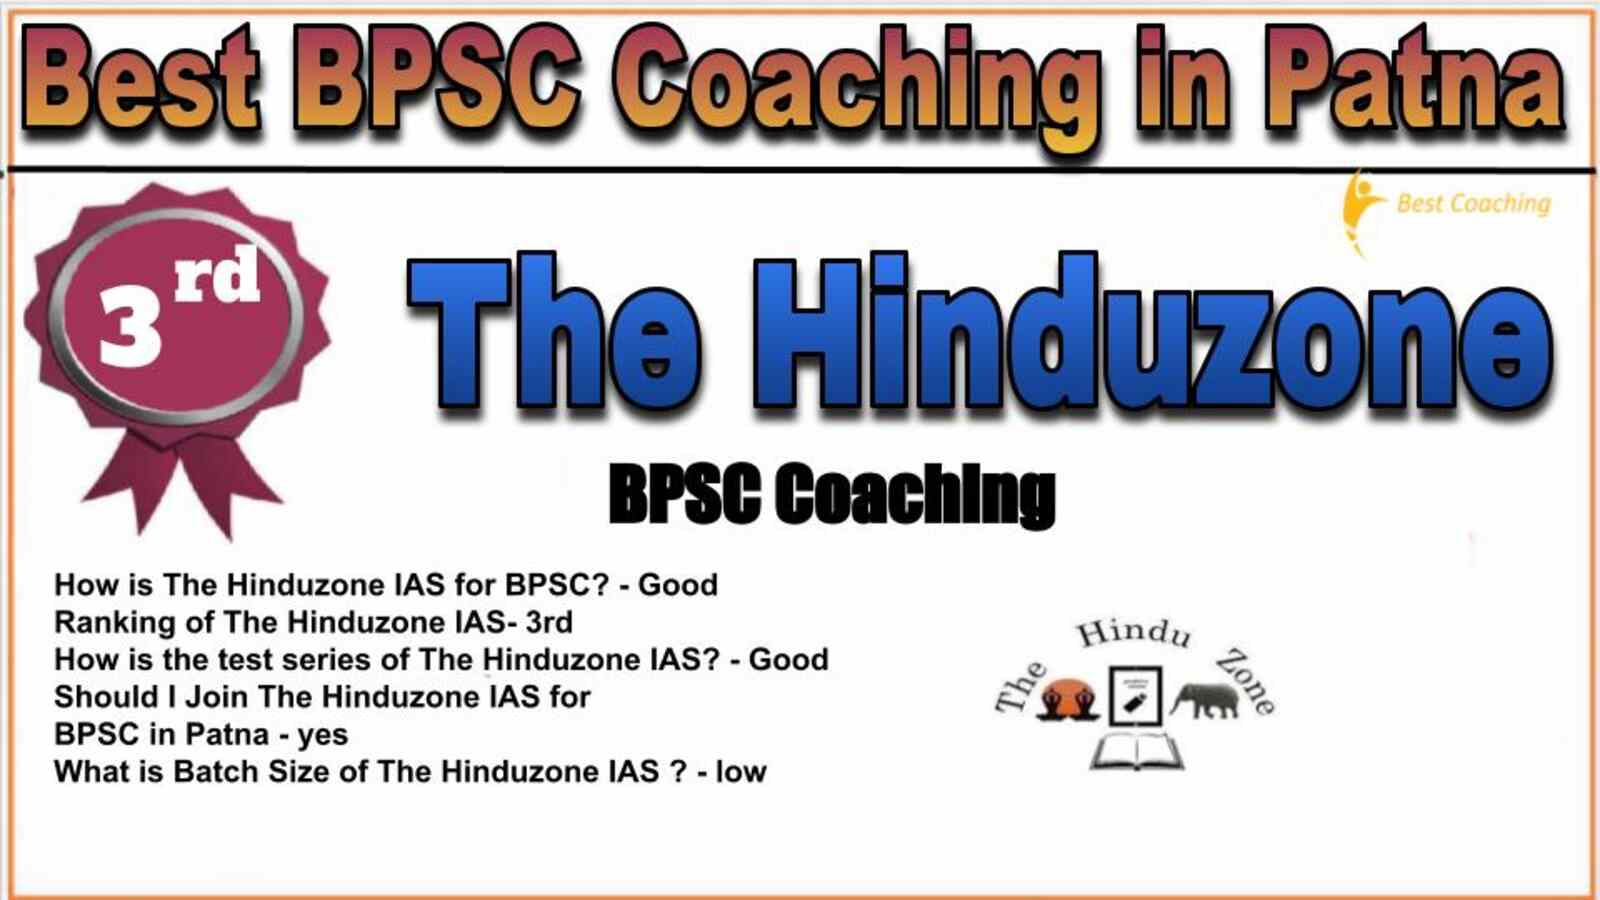 Rank 3 Best BPSC Coaching Institute in Patna